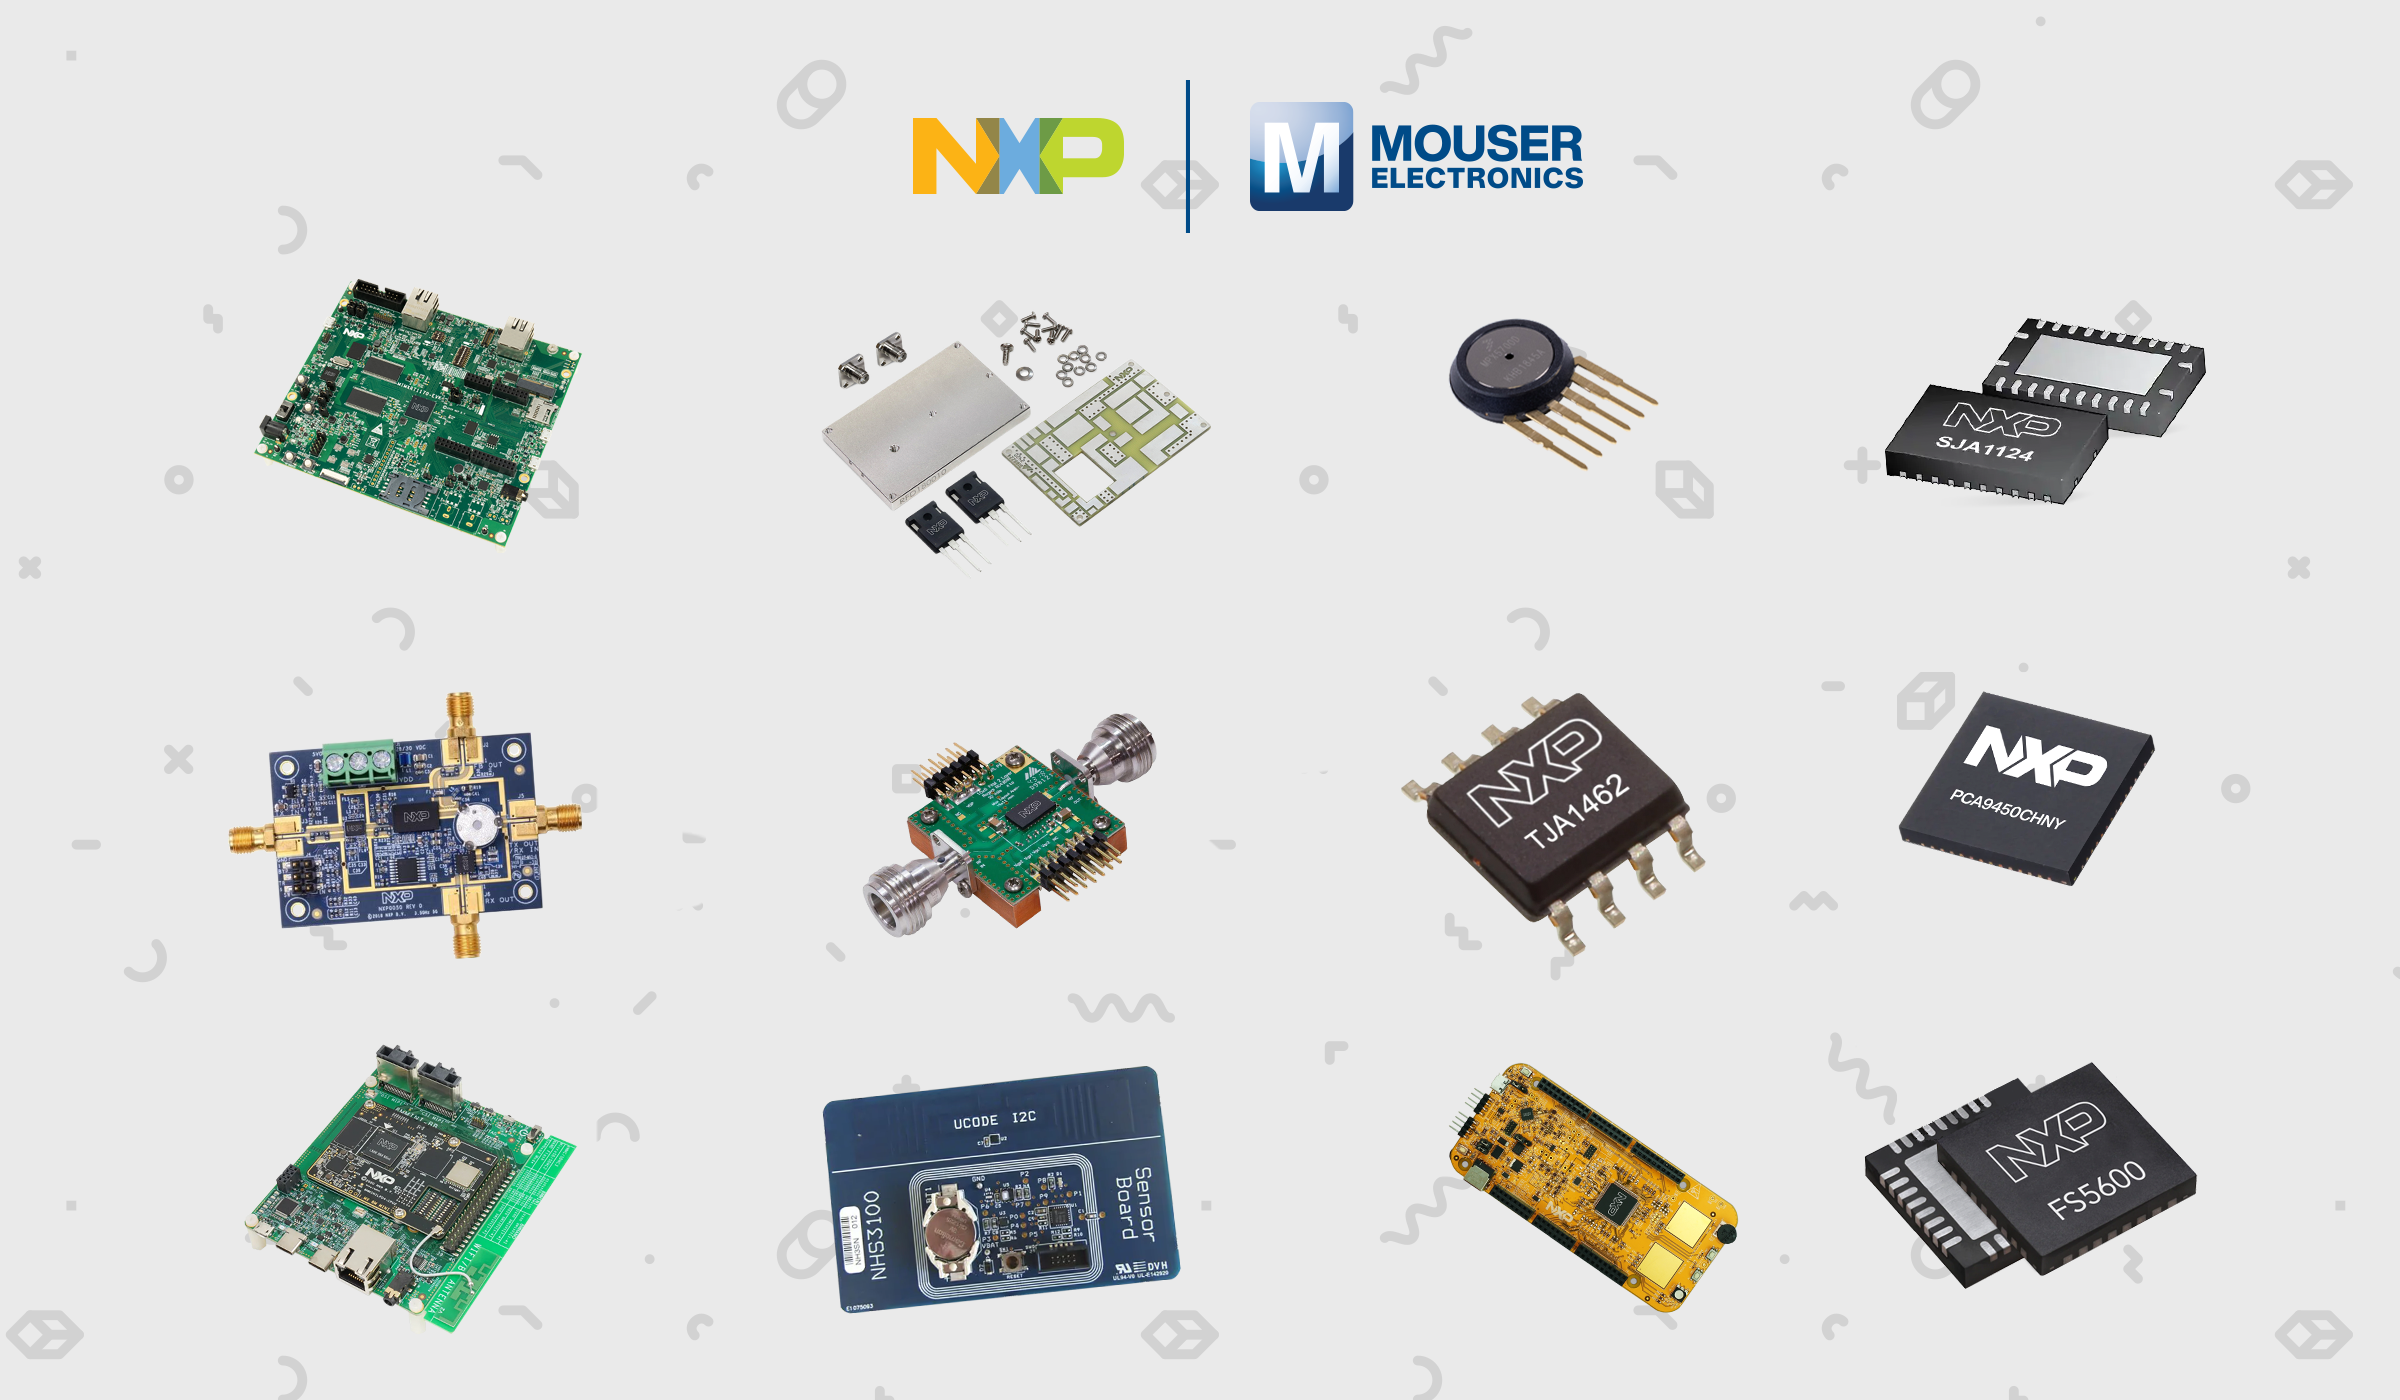 授权分销商贸泽电子为工程师带来NXP Semiconductors新技术